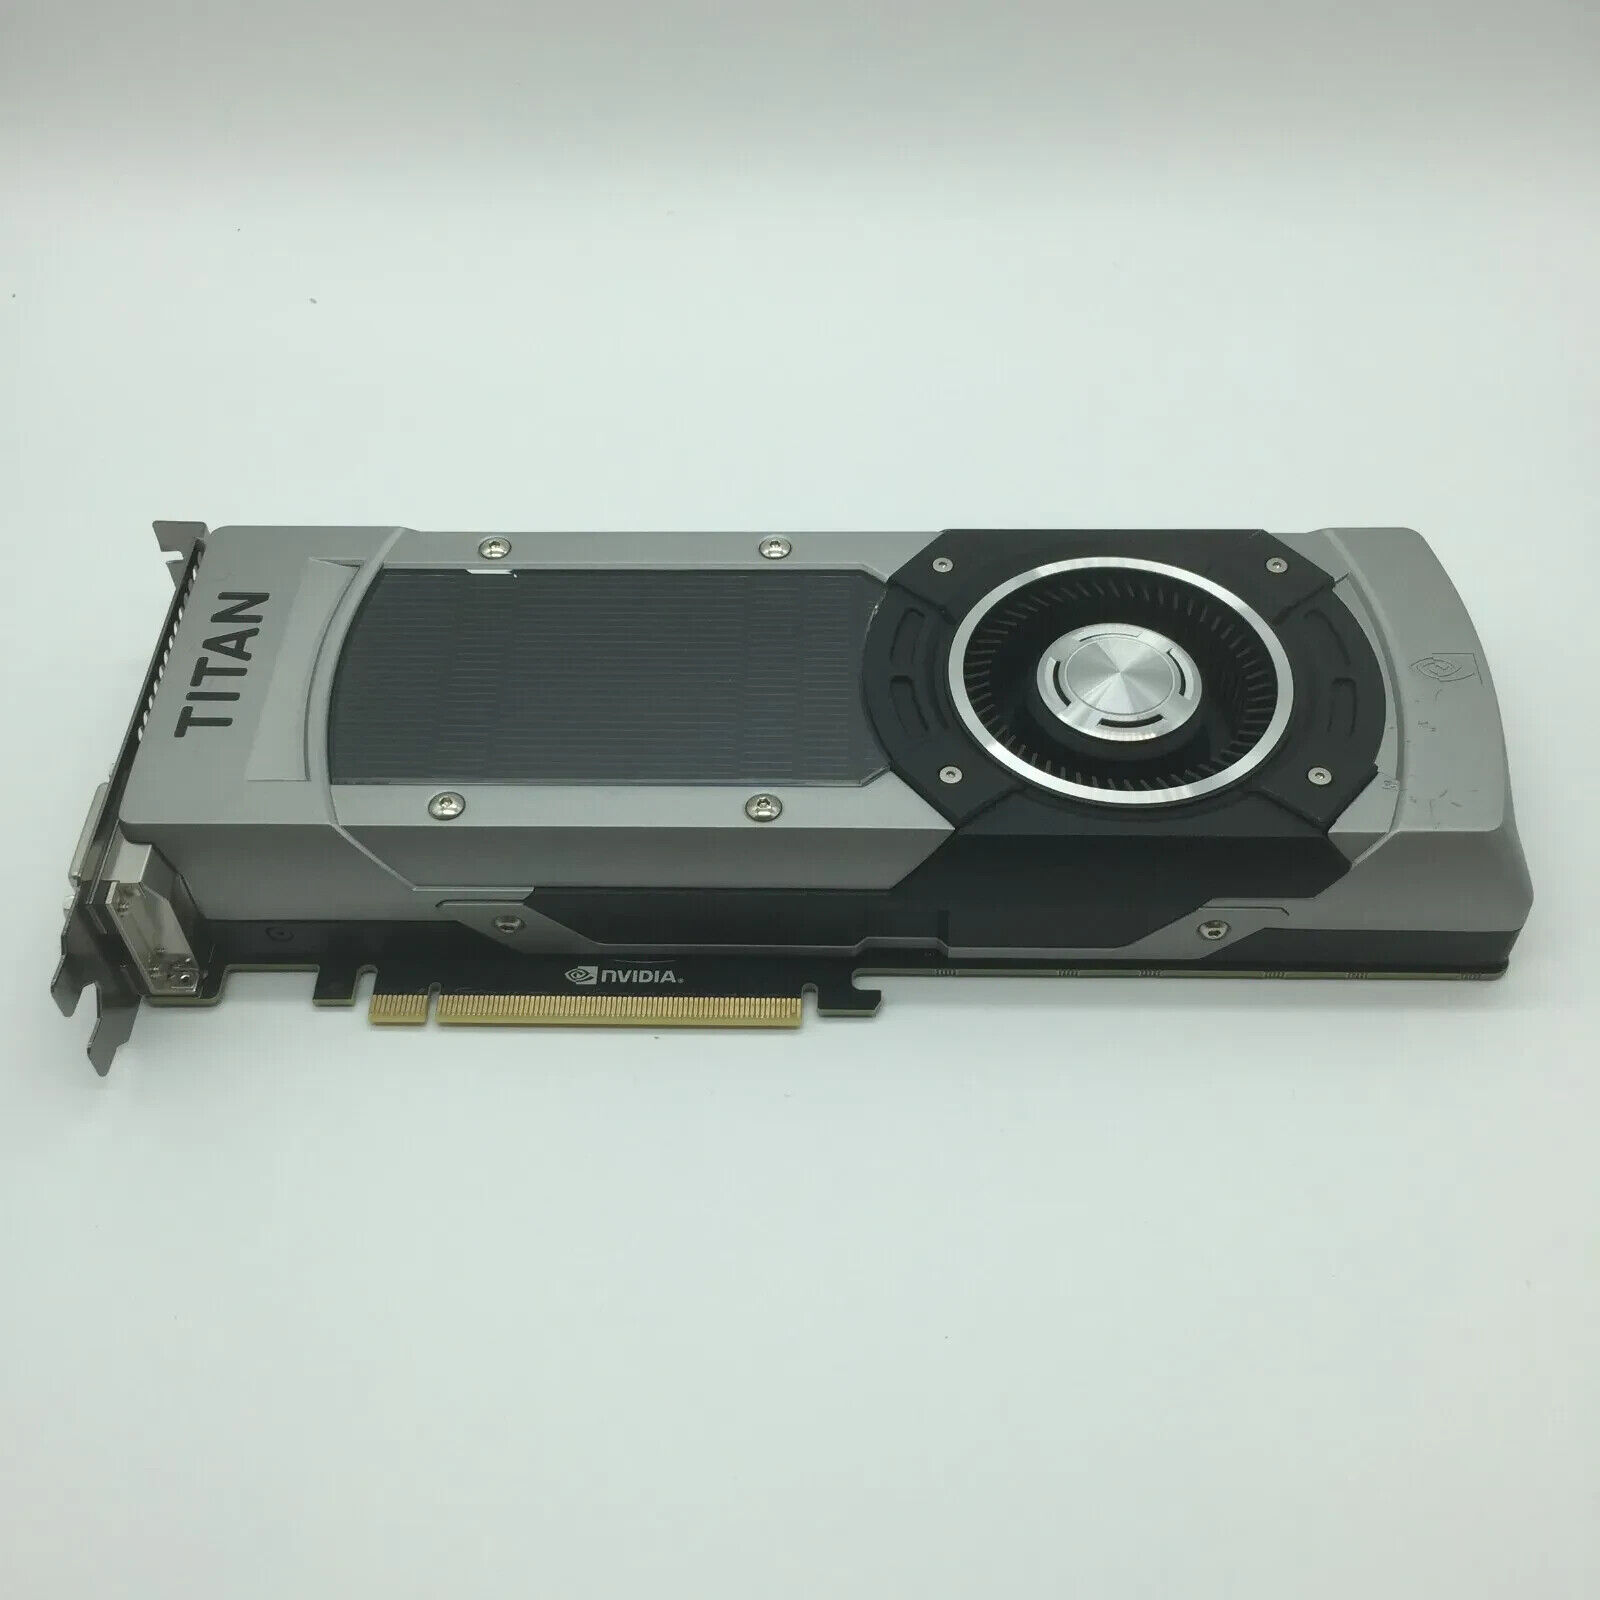 EVGA Nvidia GeForce GTX Titan Black 6GB GDDR5 GPU 06G-P4-3790-KR 